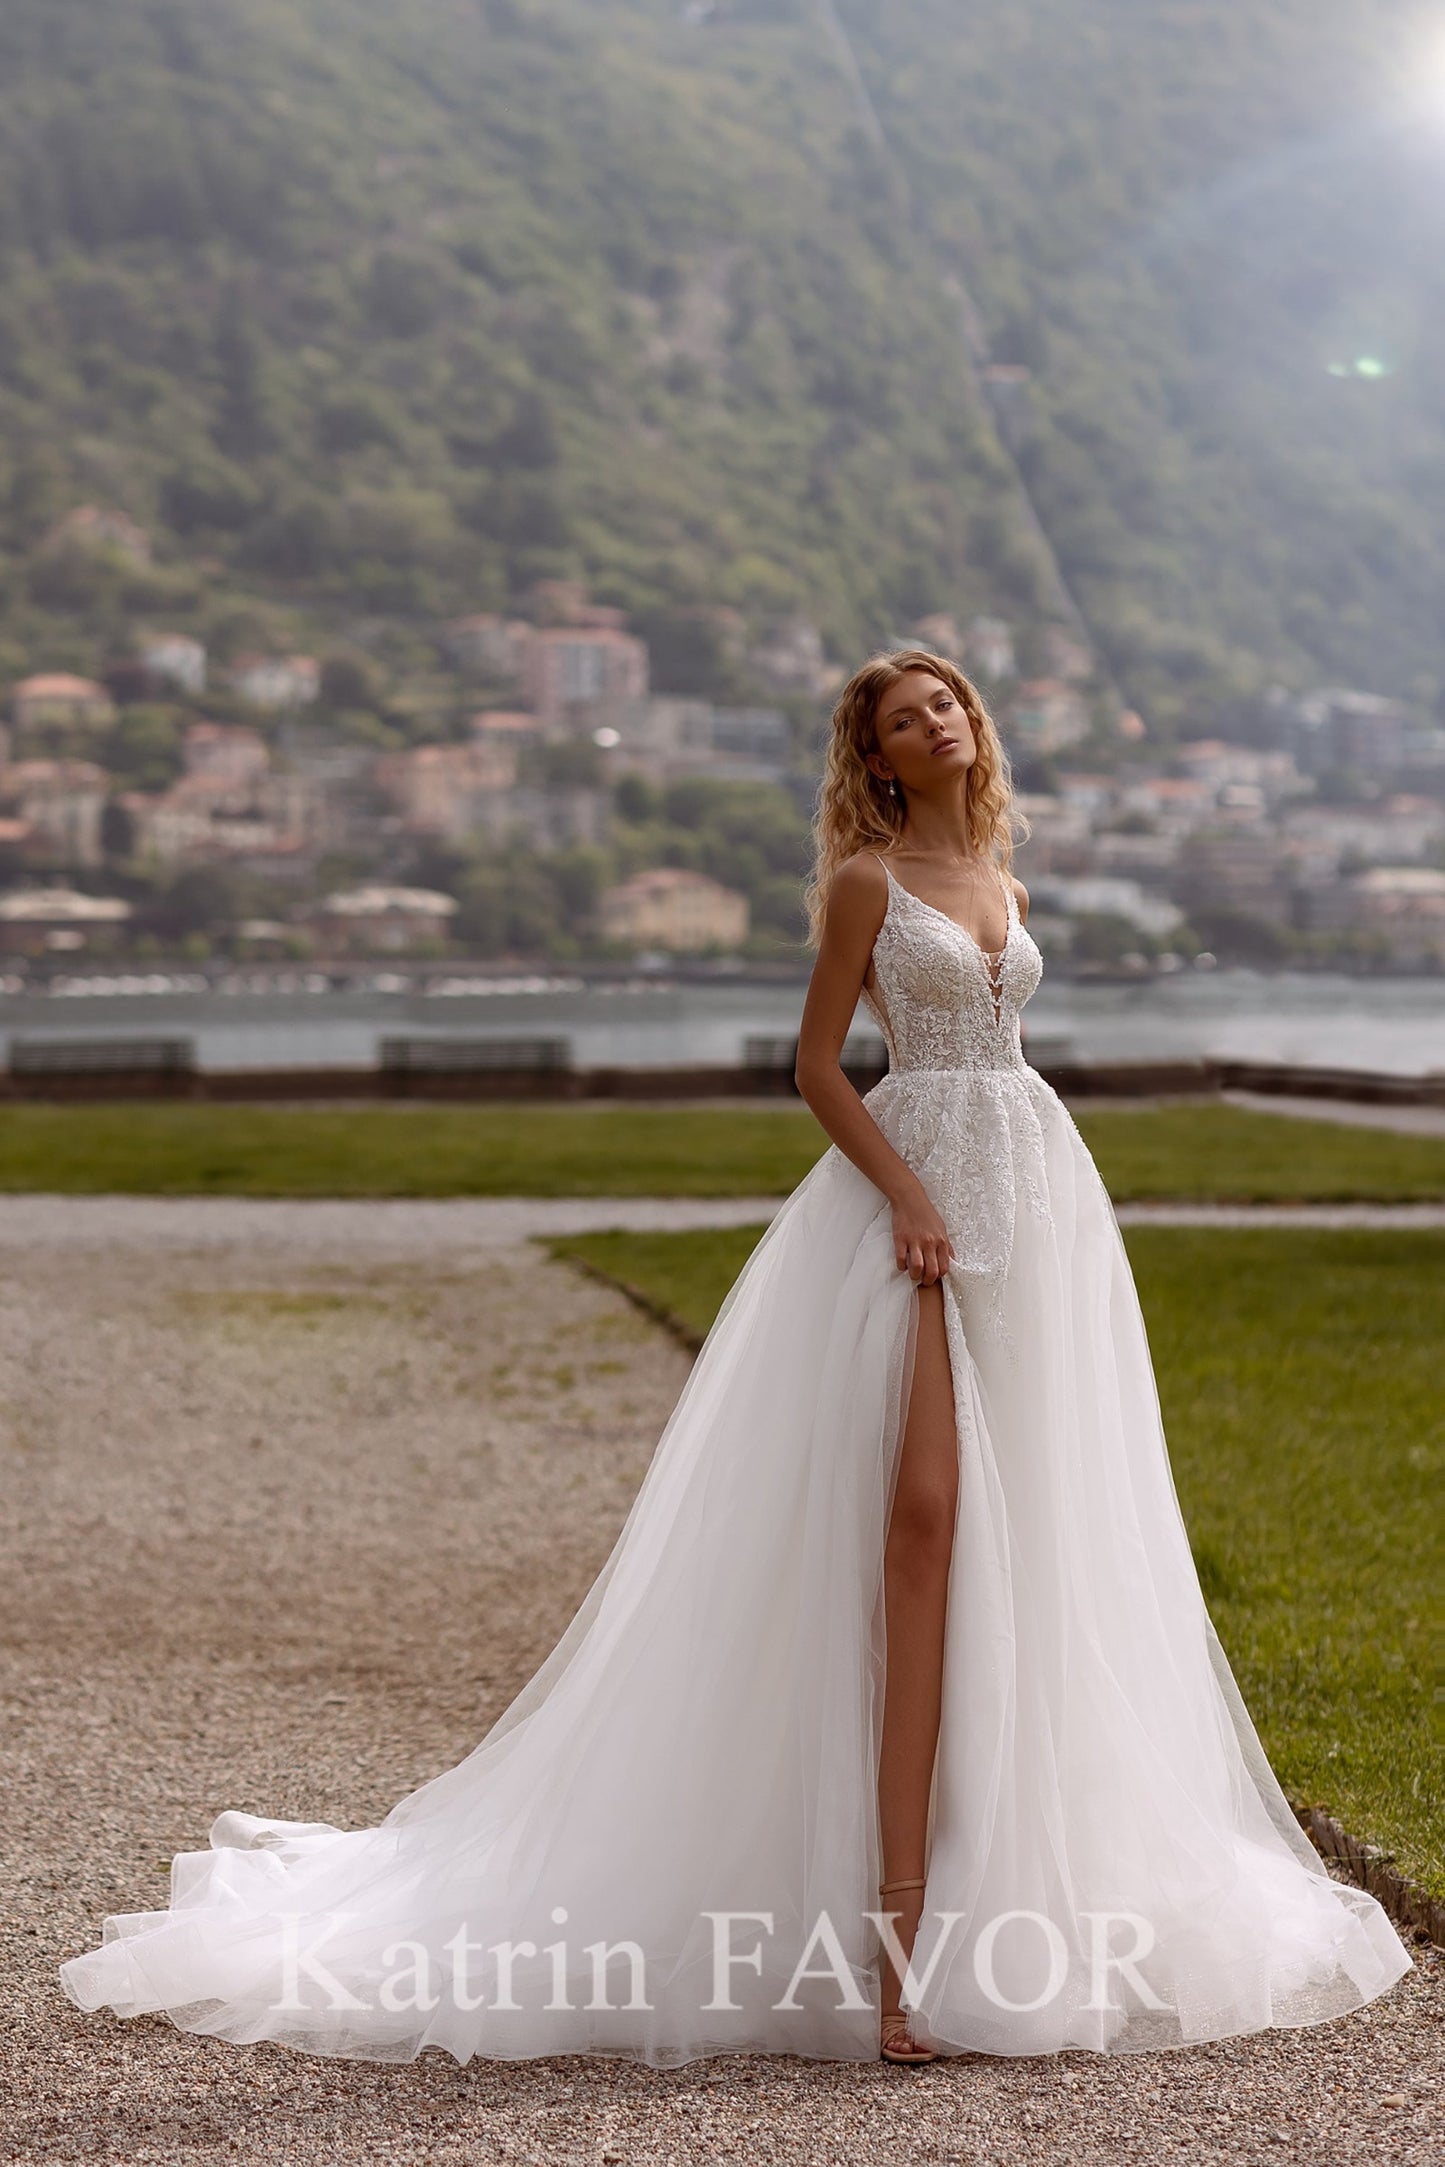 KatrinFAVORboutique-Sparkle tulle a-line beach wedding dress